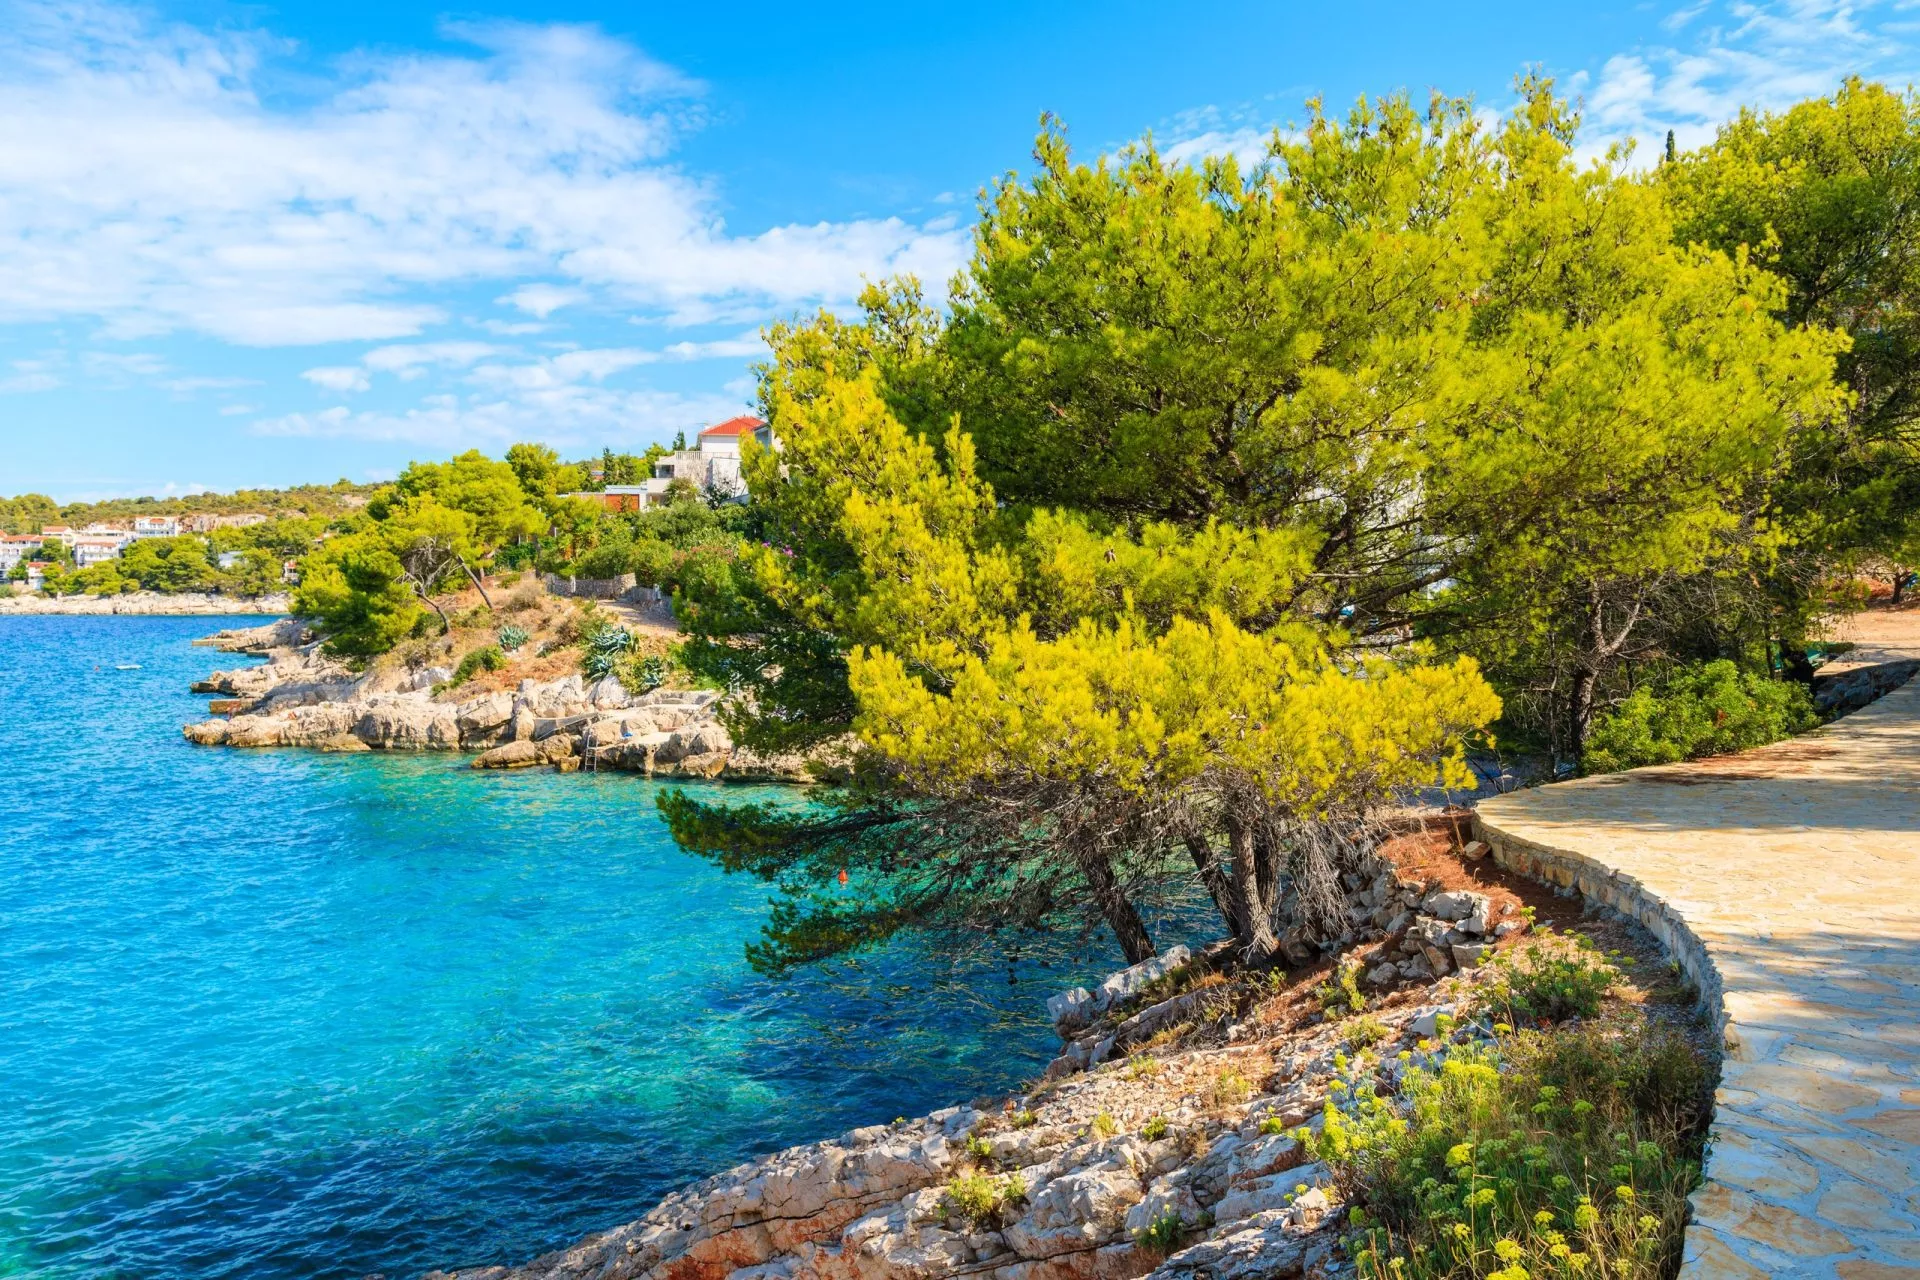 Spazierweg zum Strand mit grünen Kiefern in der Stadt Primosten, Dalmatien, Kroatien